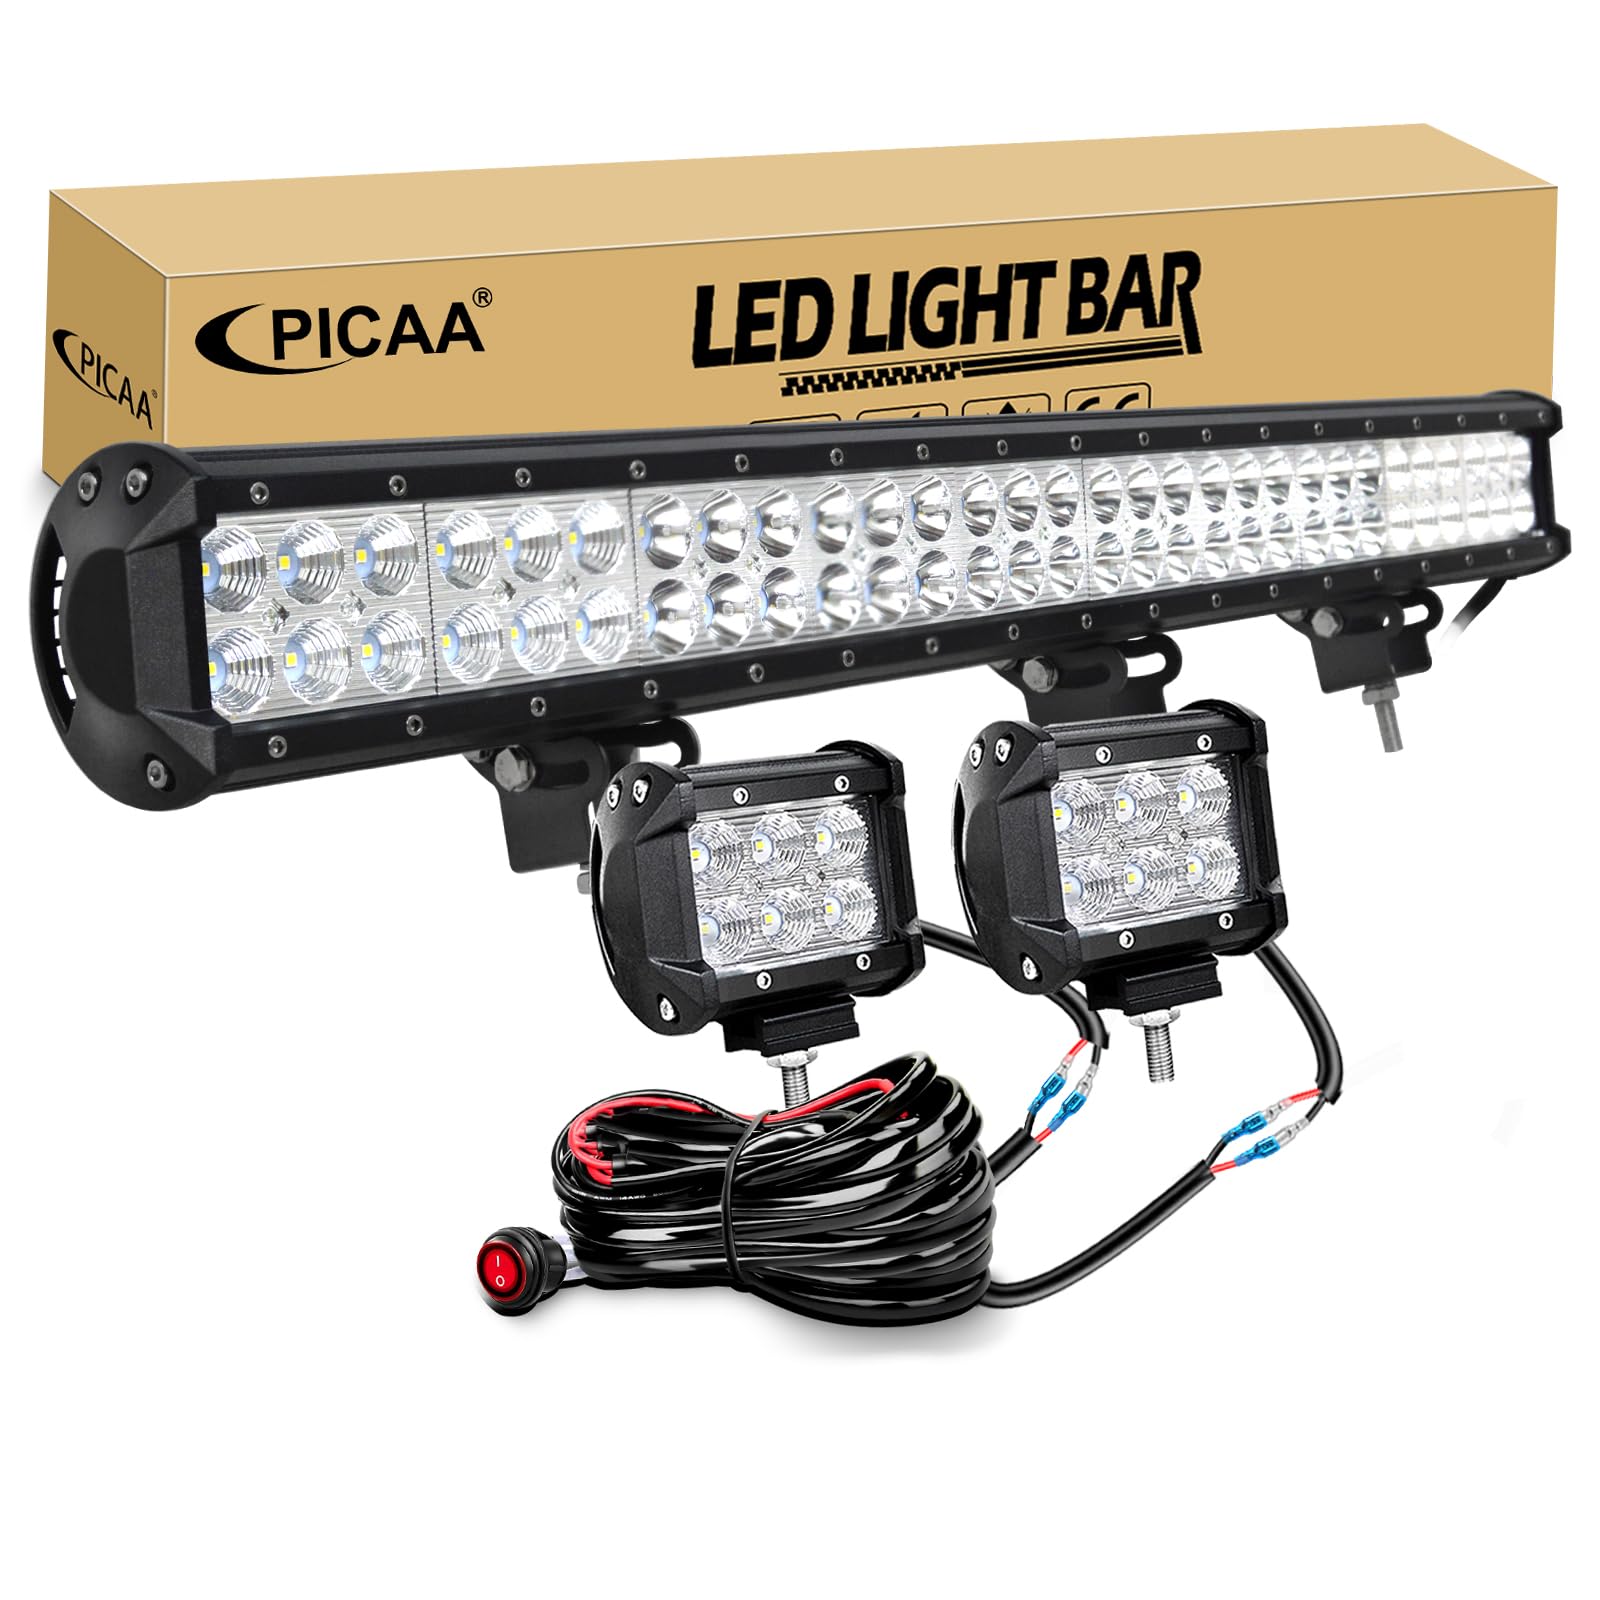 PICAA 28 Zoll 180W LED Lightbar+2x 4 18W LED Arbeitsscheinwerfer+Kabelbaum Kit, Tri-Reihen Led Lichtbalken 12V 24V Auto Offroad 4x4 Zusatzscheinwerfer Flutlicht Spotlight von PICAA